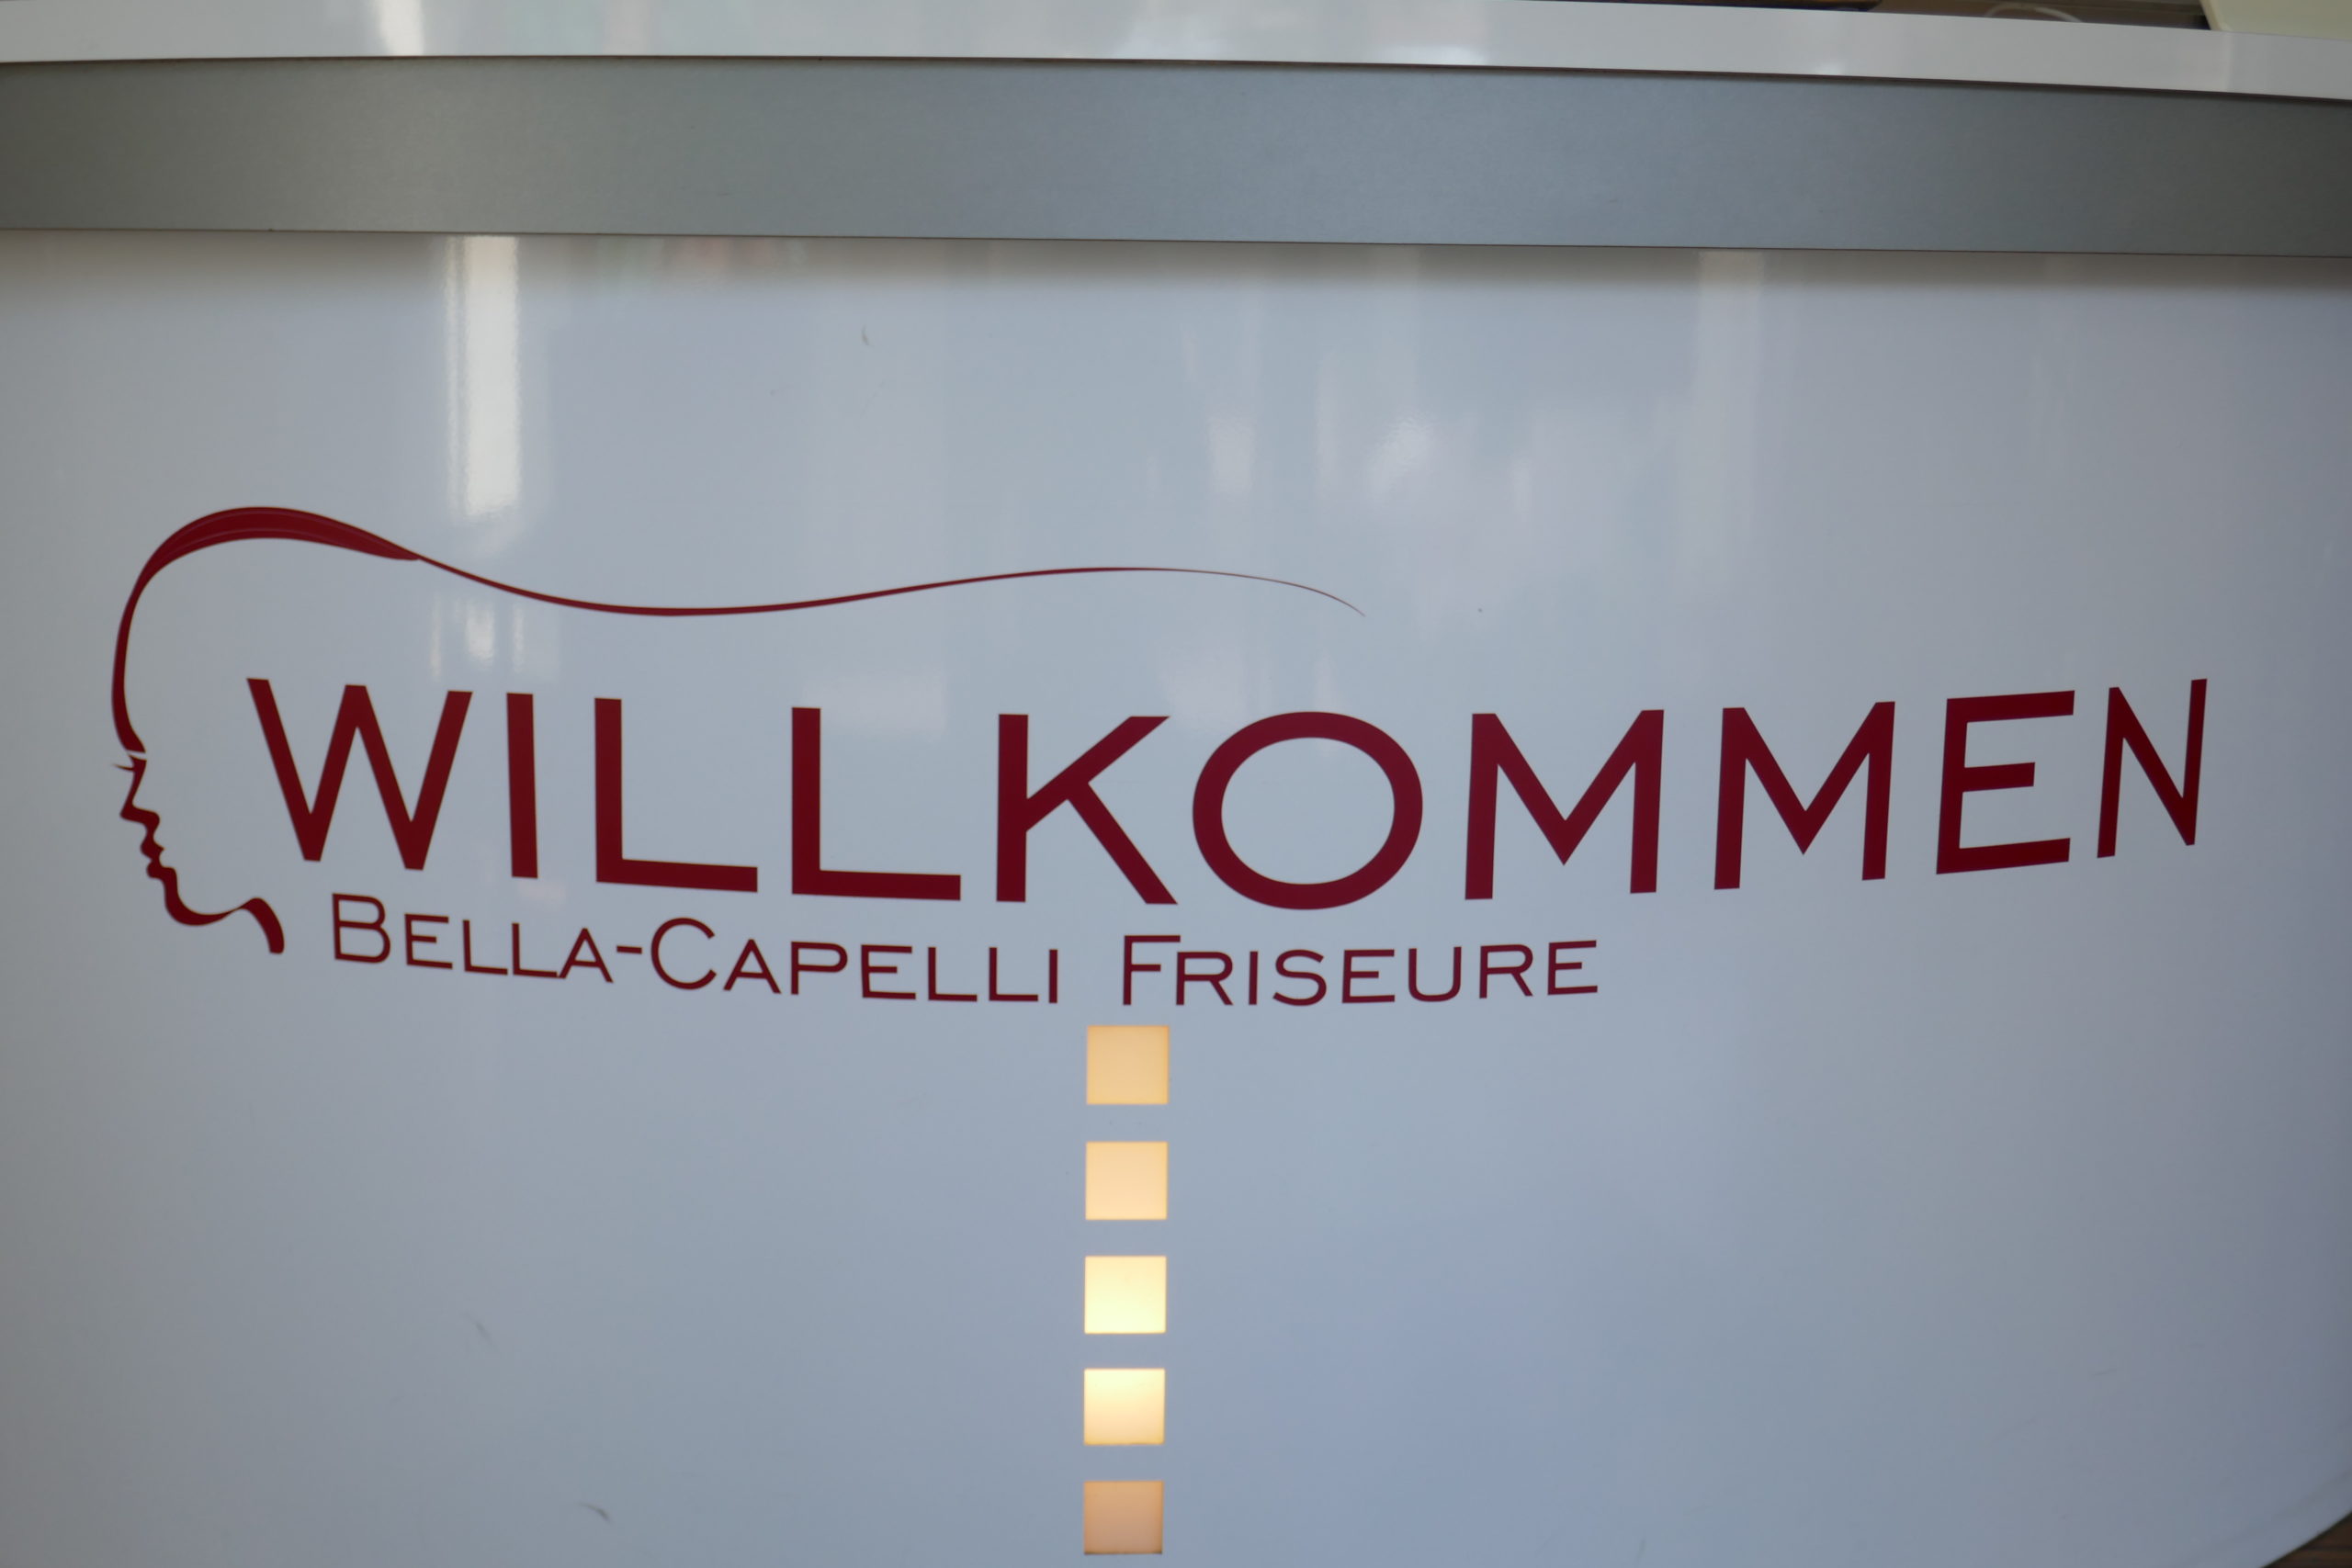 Aktuelle Haartrends und hochwertige Produkte - Wir beraten individuell & nehmen uns Zeit! Jetzt Termin bei Friseur Bella Capelli in Damstadt vereinbaren!